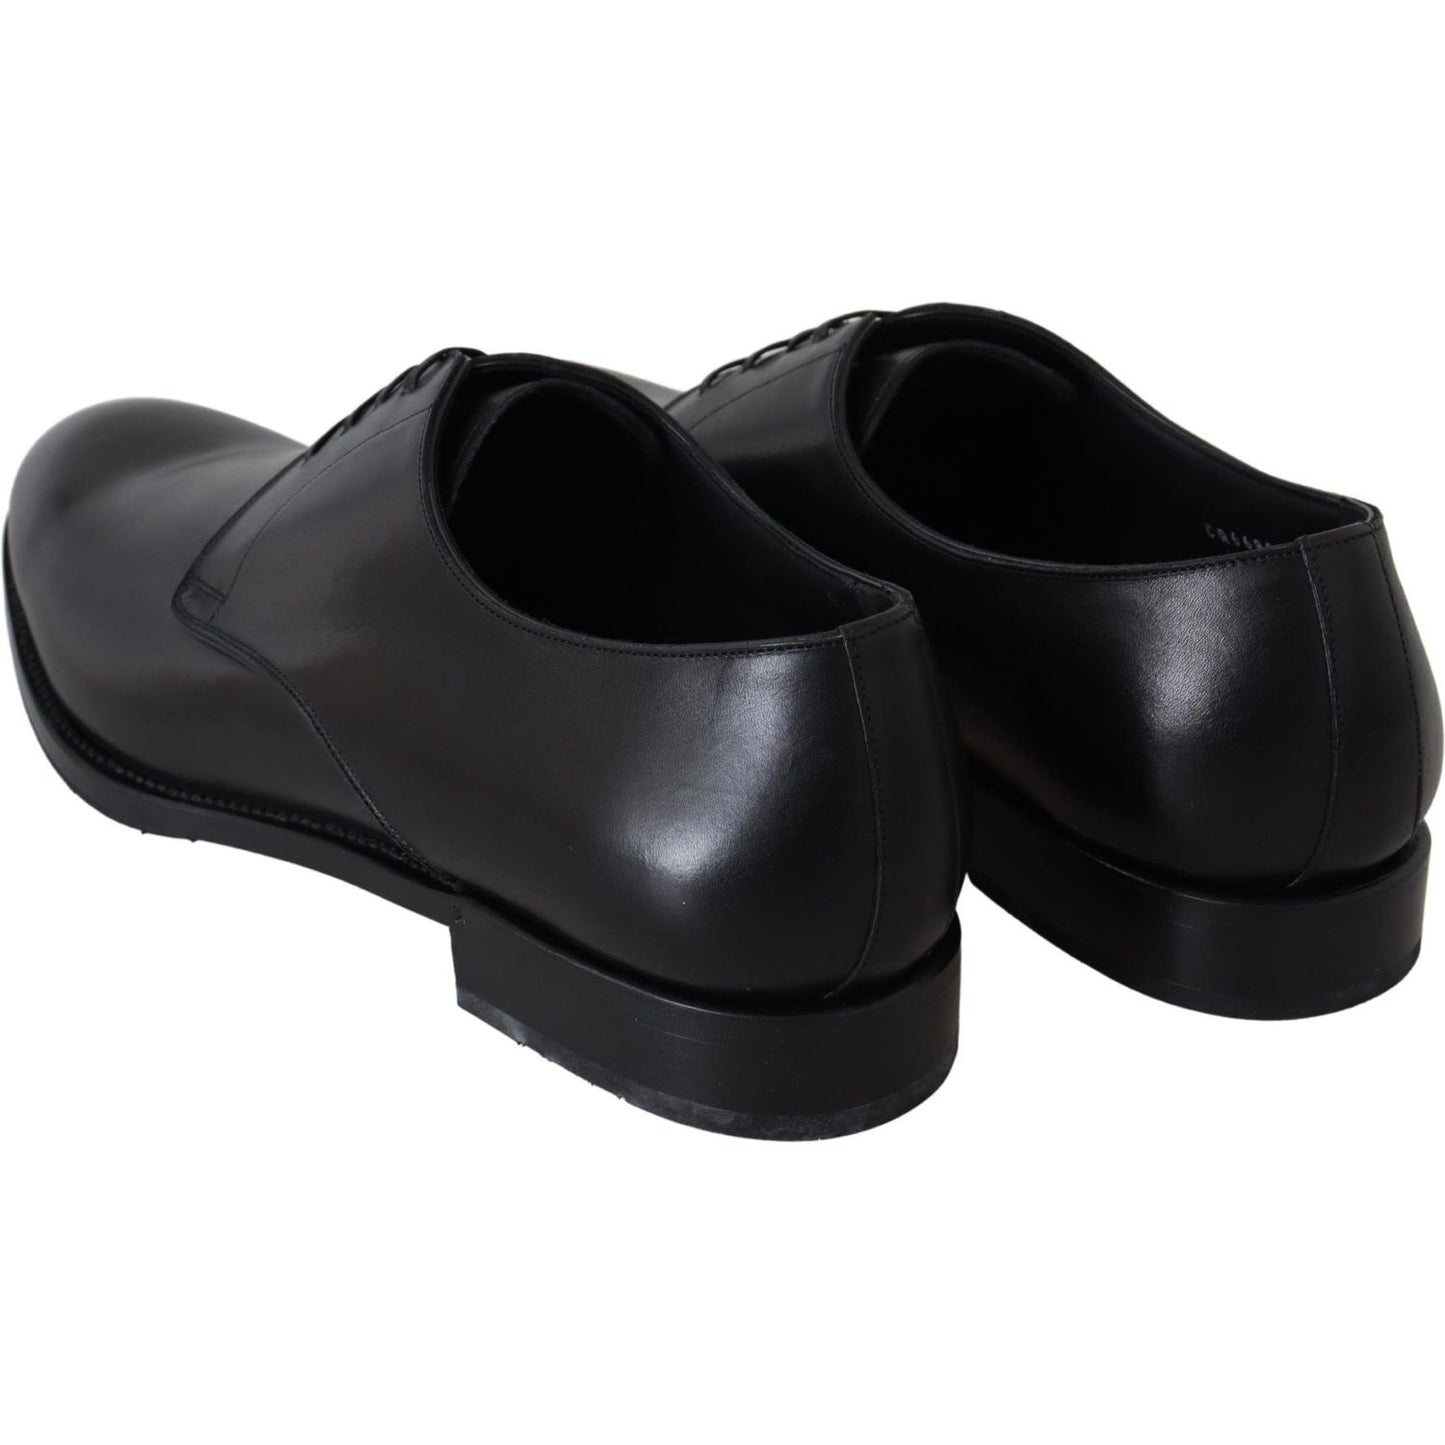 Dolce & Gabbana Elegant Black Leather Derby Dress Shoes Dress Shoes black-leather-sartoria-hand-made-shoes